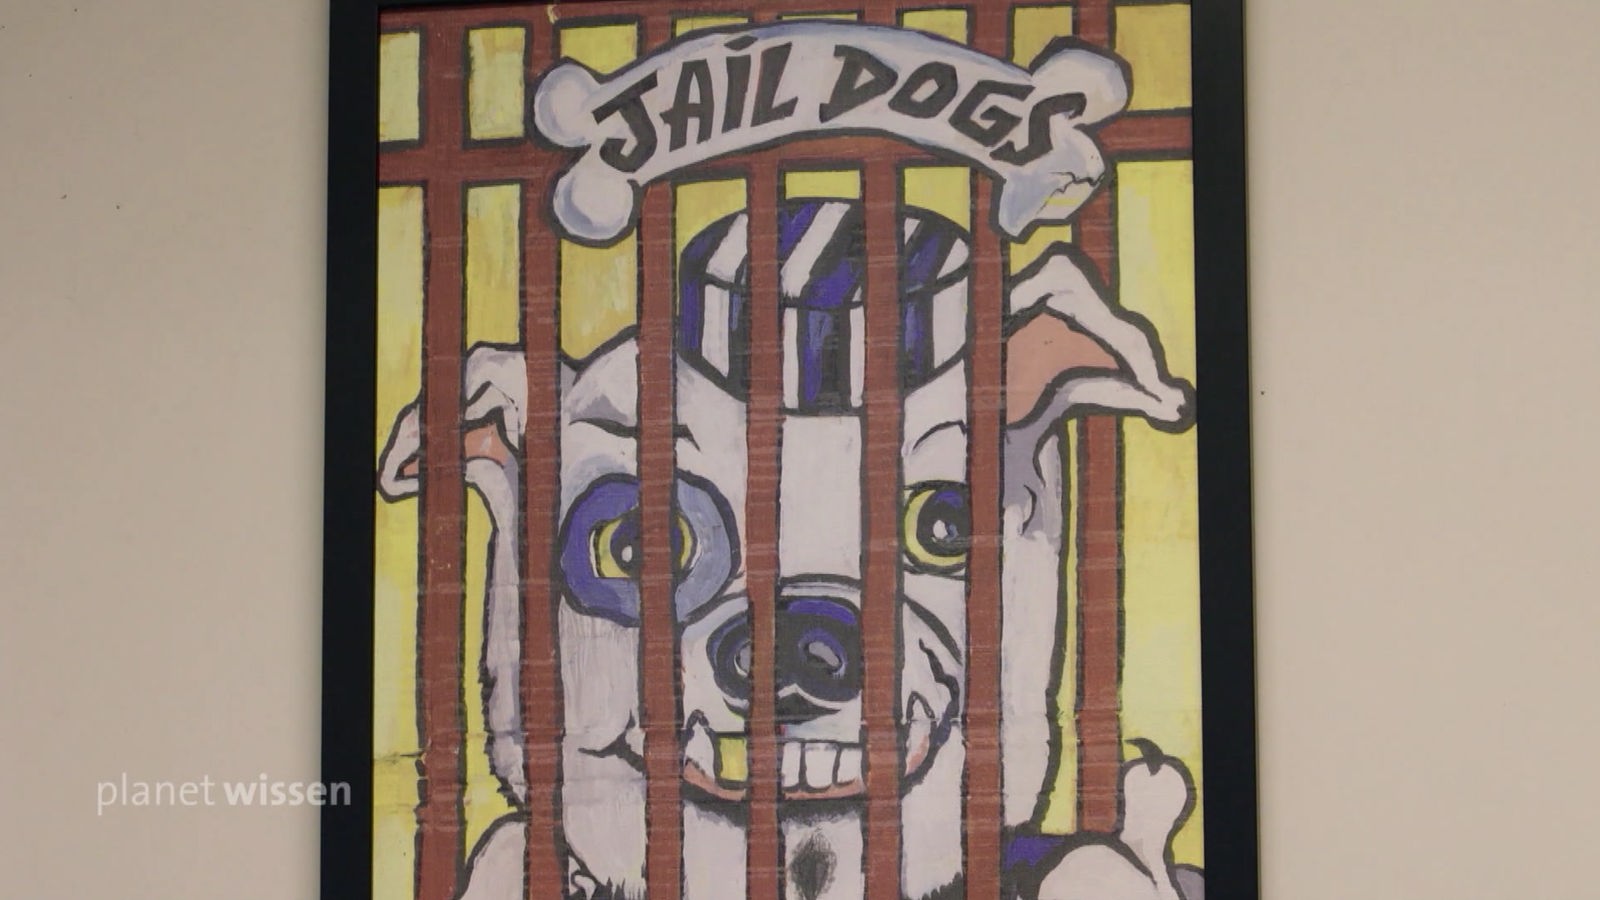 Wandmalerei: Ein Hund hinter Gittern in Gefängniskleidung. Darüber steht 'Jail Dogs'.